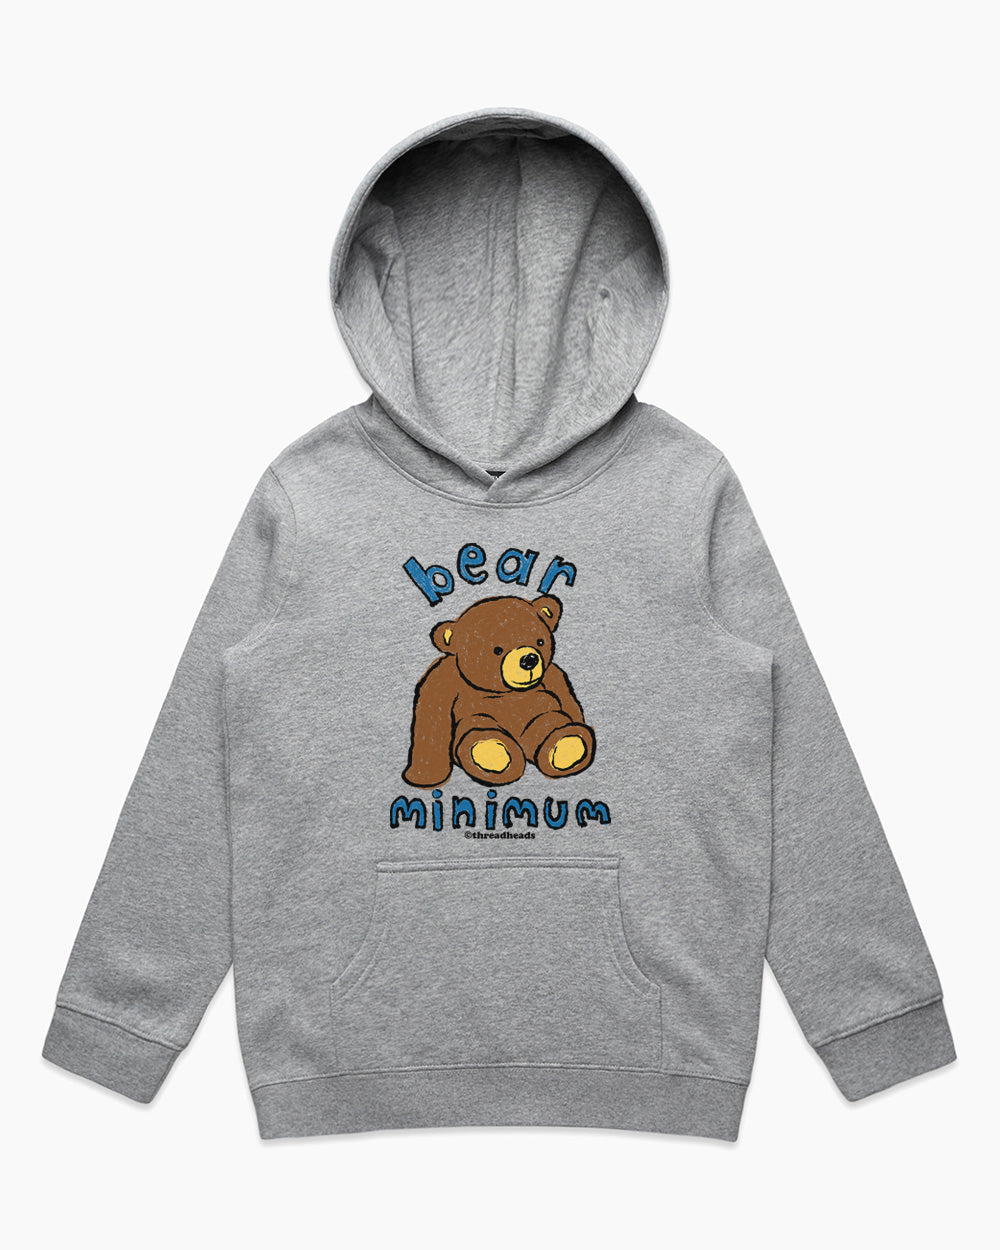 Bear Minimum Kids Hoodie Europe Online Grey